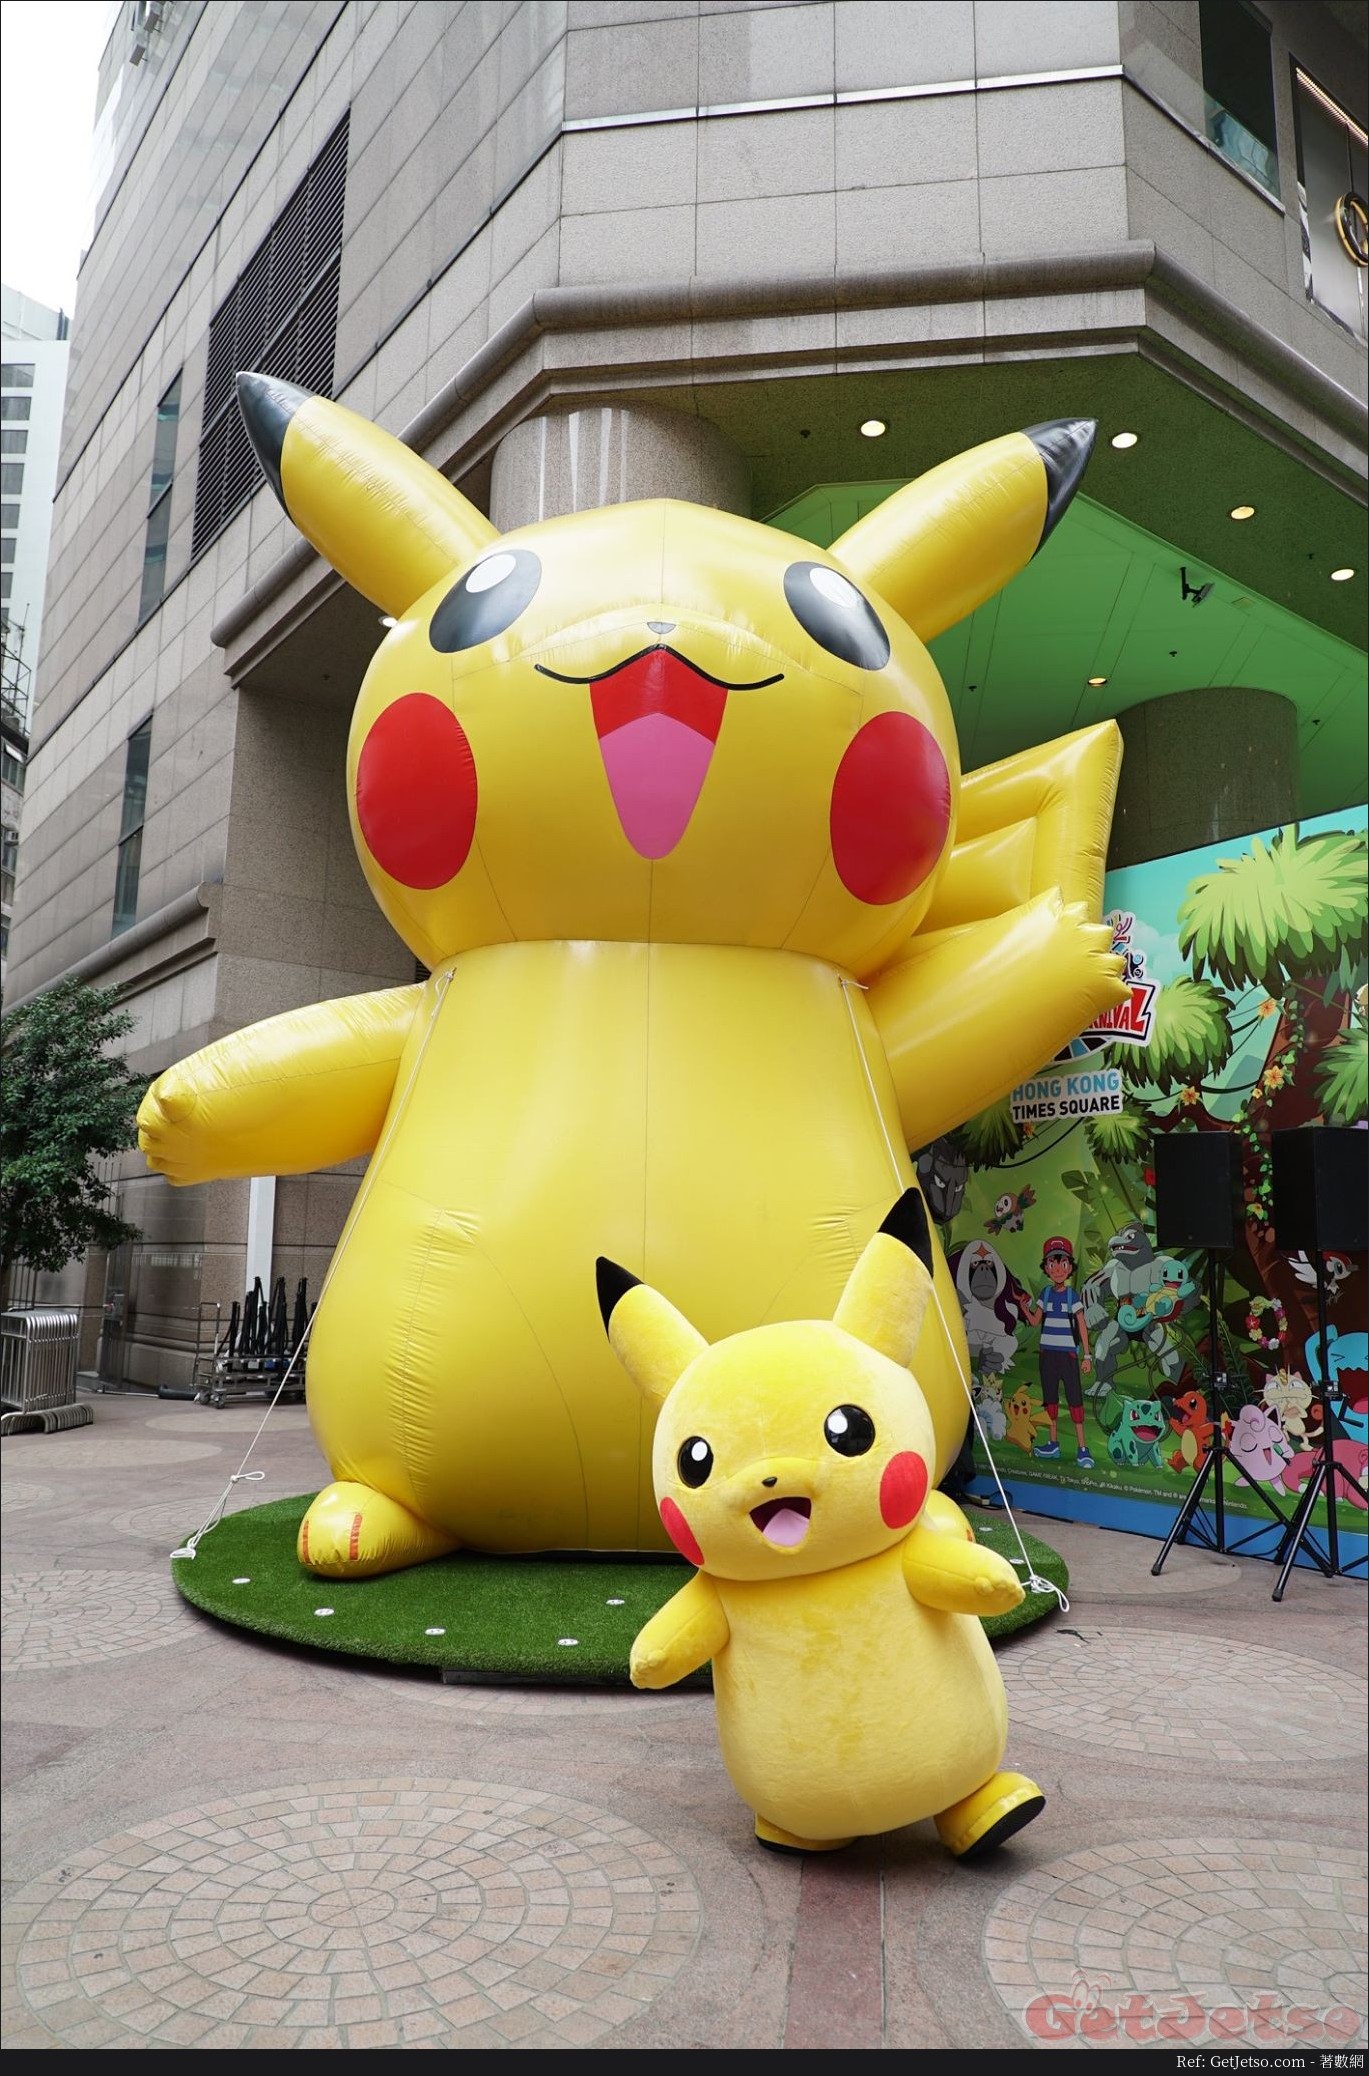 Pokémon寵物小精靈嘉年華@時代廣場(至18年6月10日)圖片1